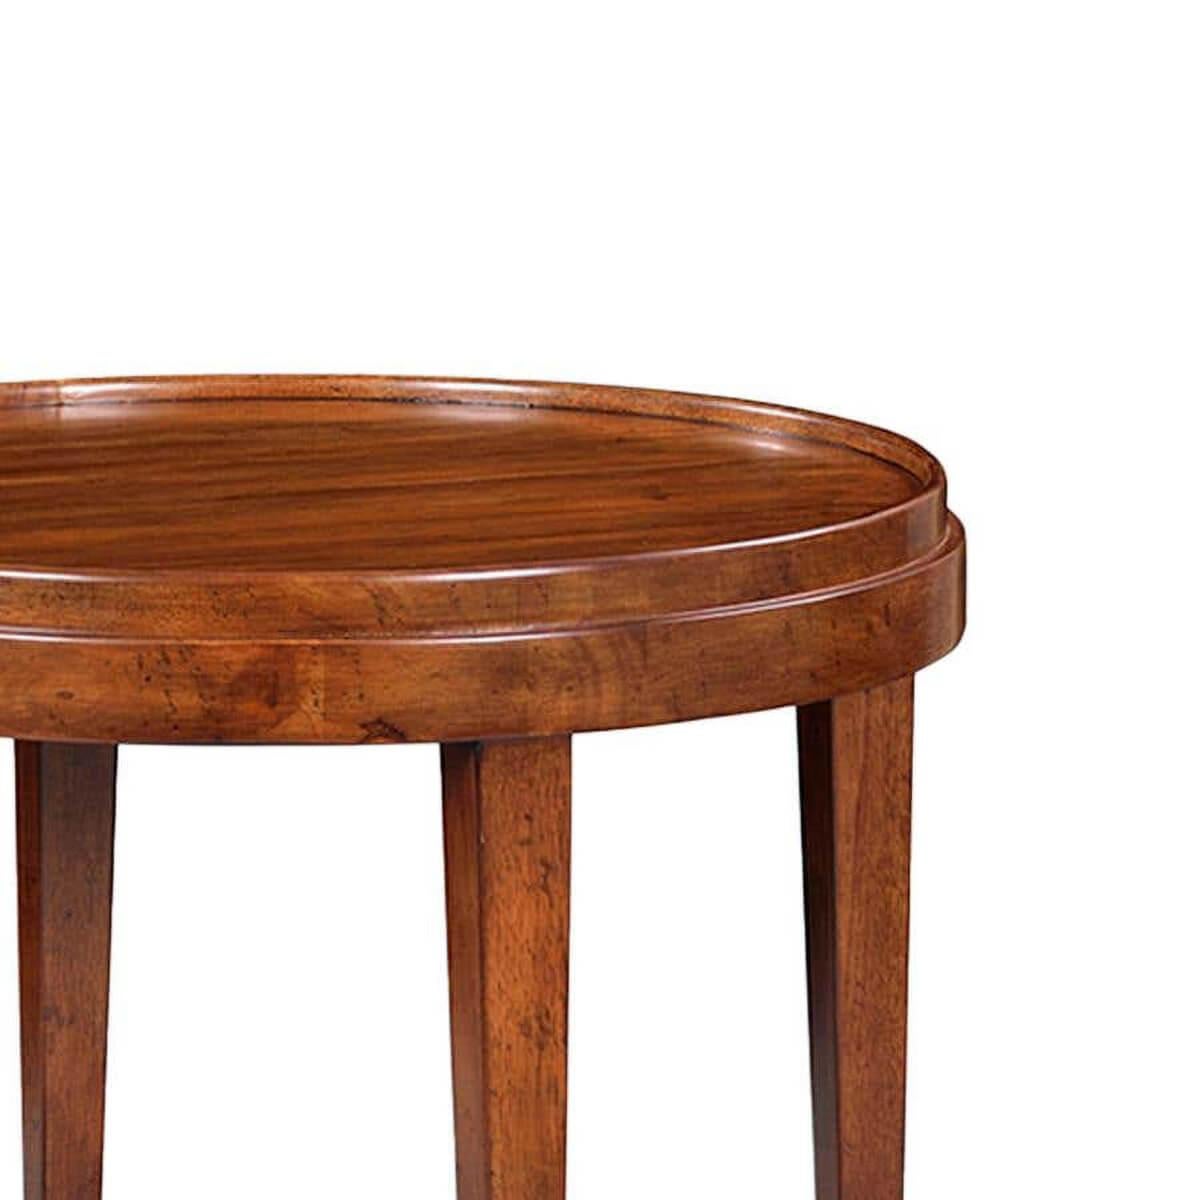 Une table d'appoint ronde de style classique avec une finition rustique en noyer chaud. La table d'appoint à deux niveaux avec un plateau à galeries en bois, avec des pieds coniques carrés et une base à brancards à étagères rondes.

Dimensions :